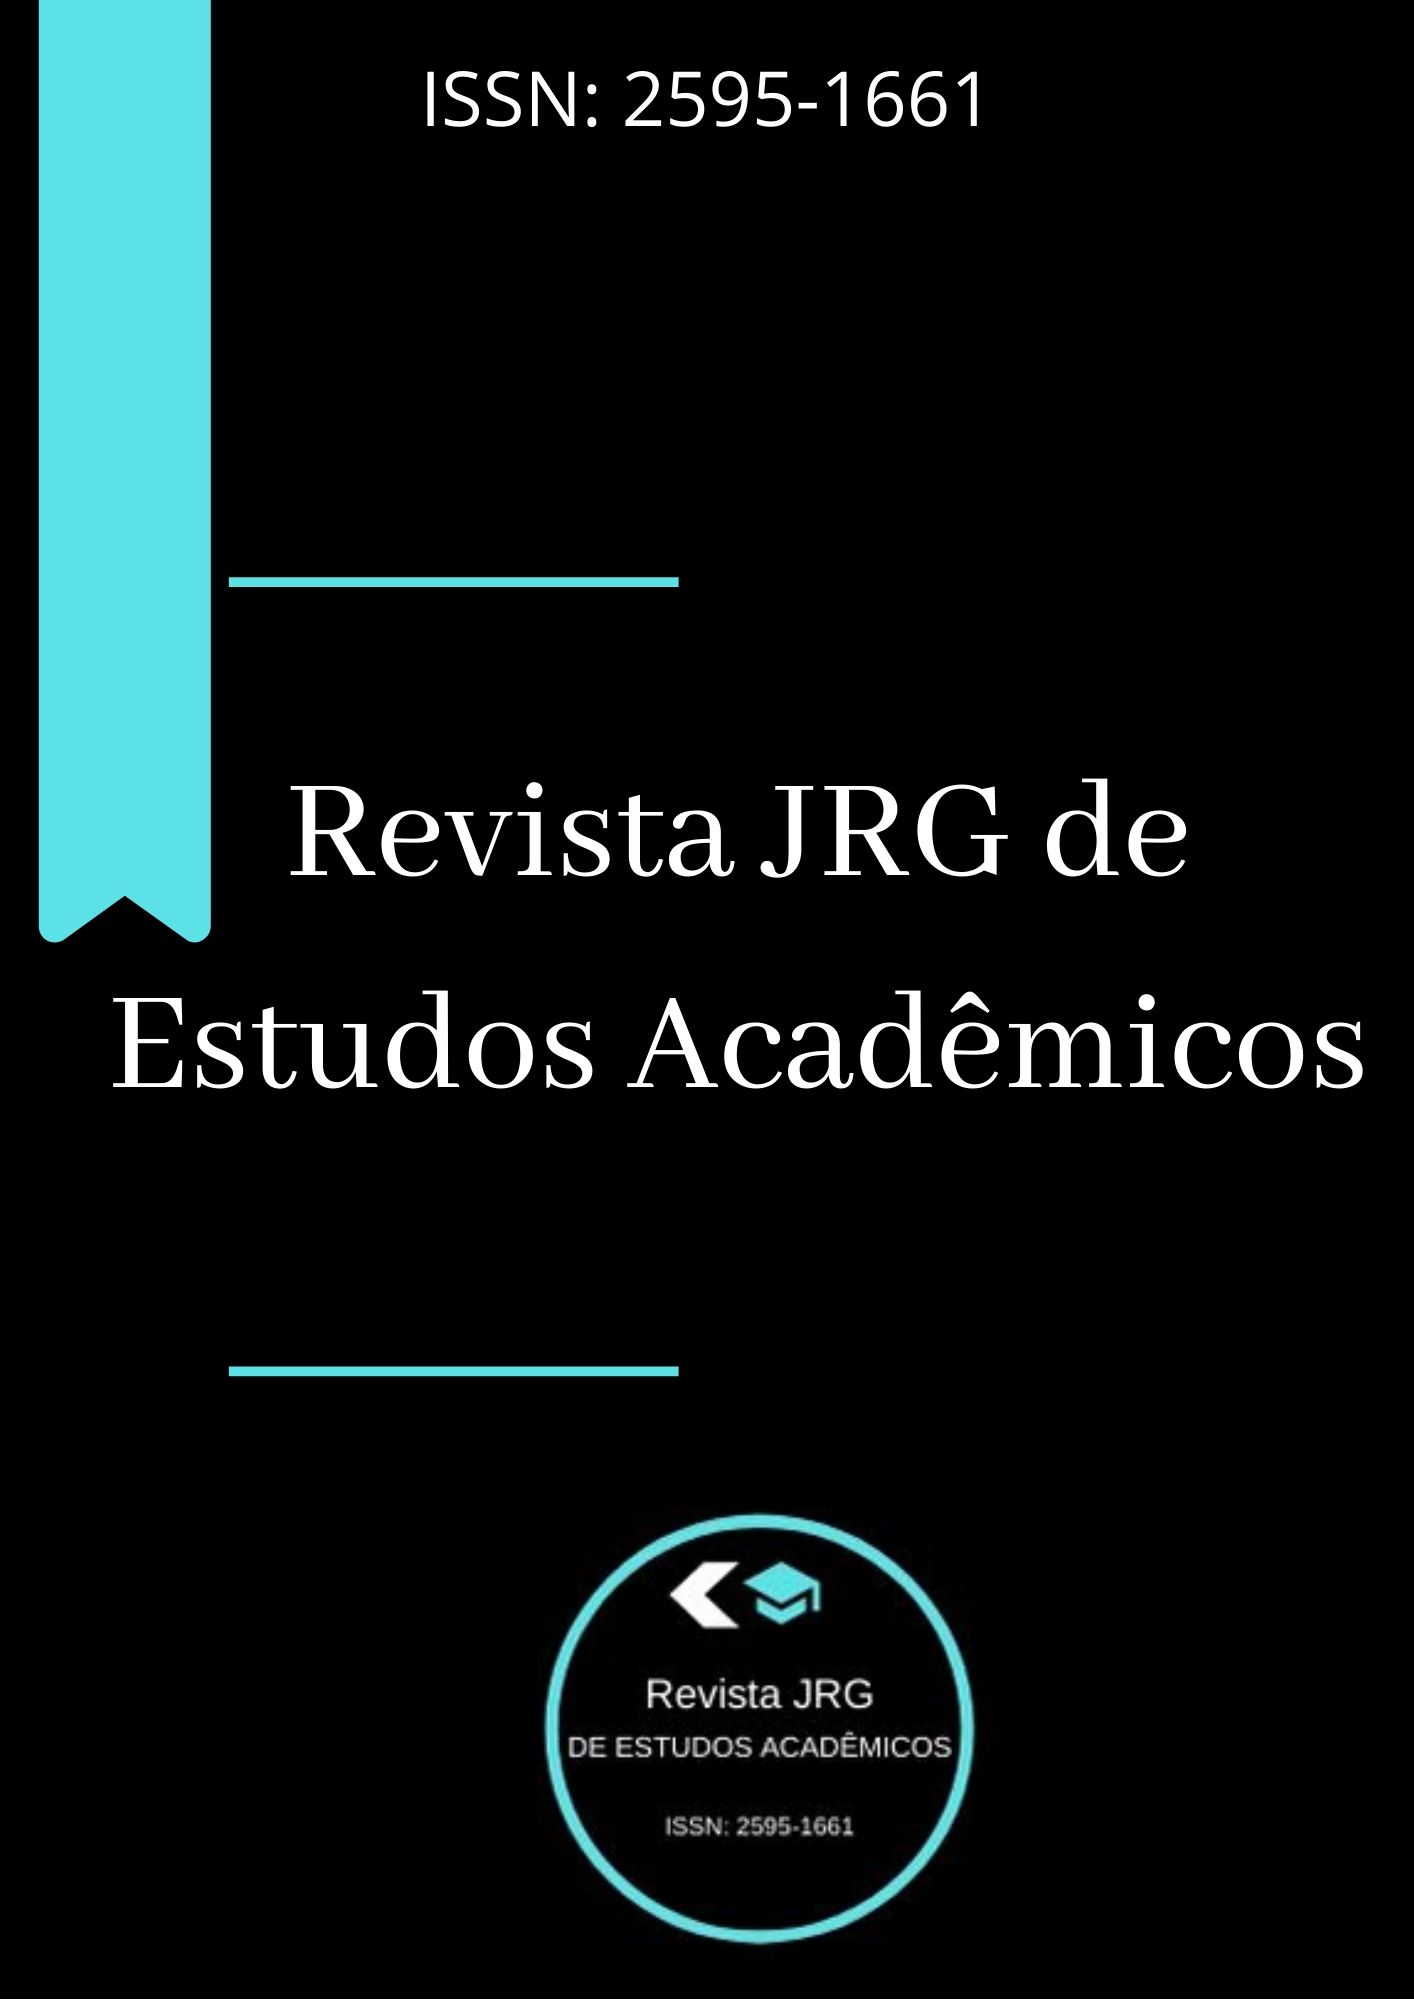 					View Vol. 4 No. 8 (2021): Revista JRG de Estudos Acadêmicos
				